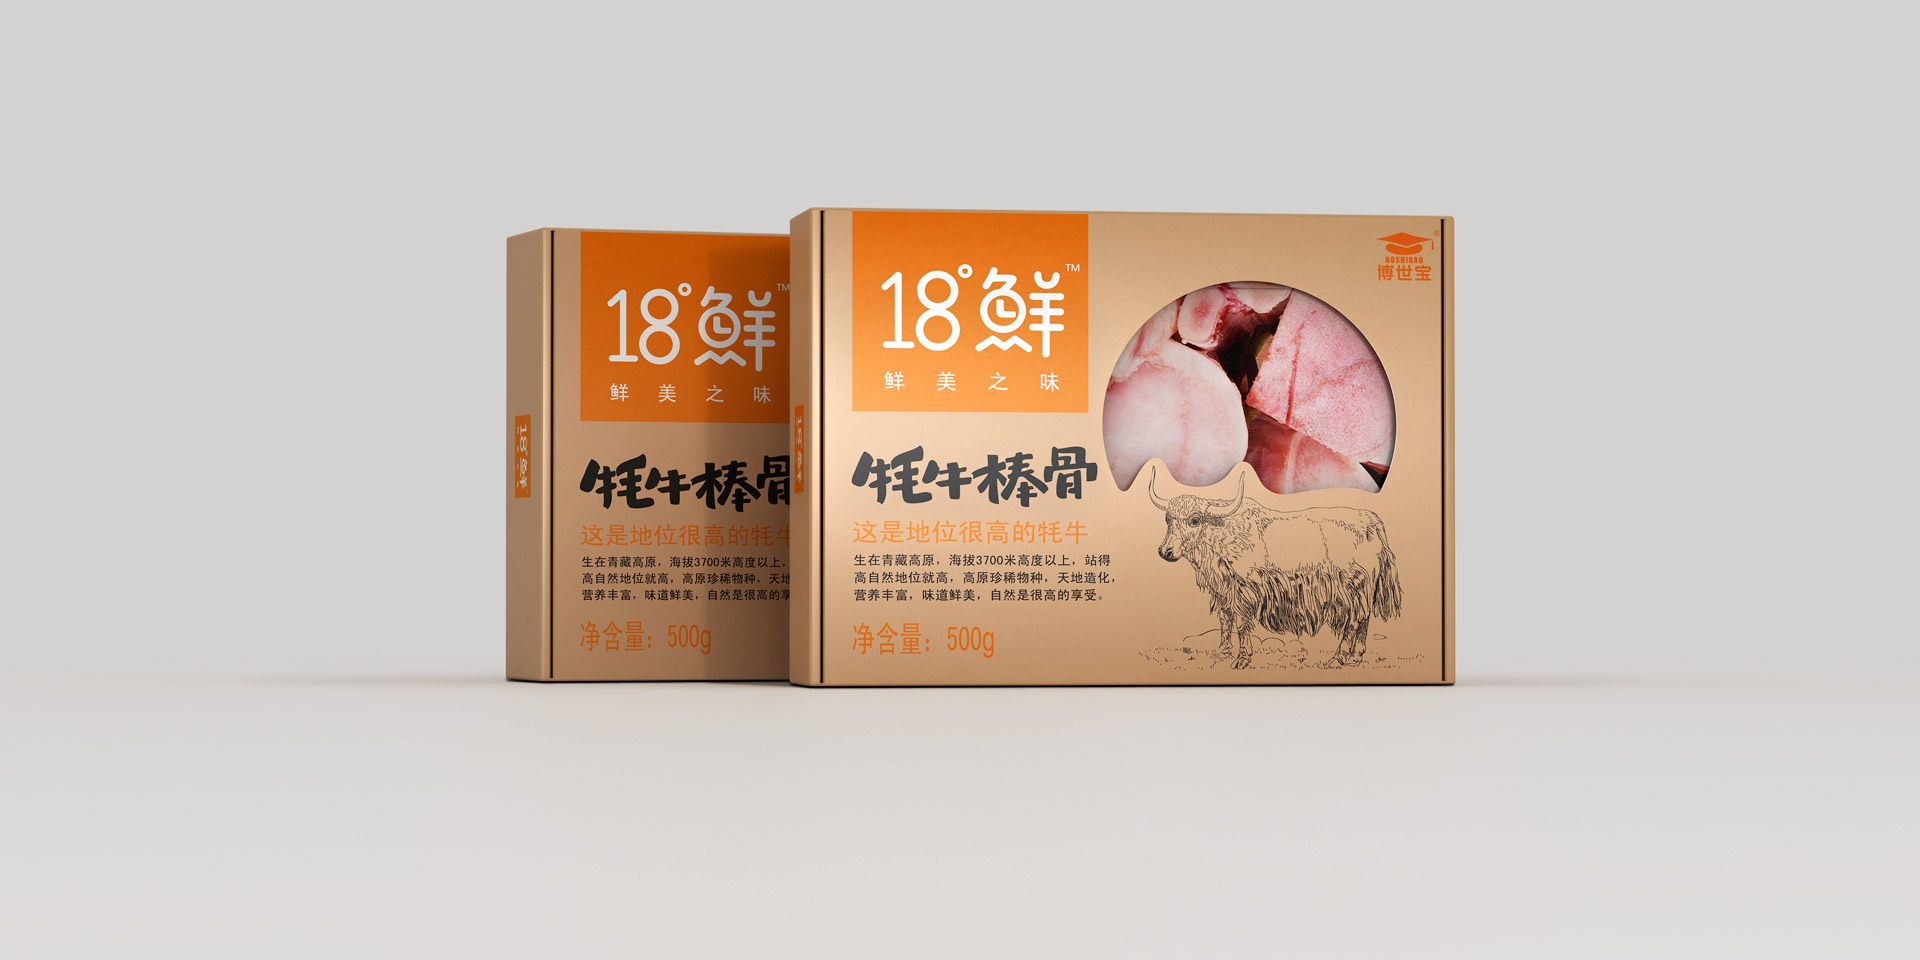 包装设计,上海包装设计,食品包装设计,上海包装设计公司,冷鲜食品包装设计,上海食品包装设计公司,产品包装设计公司